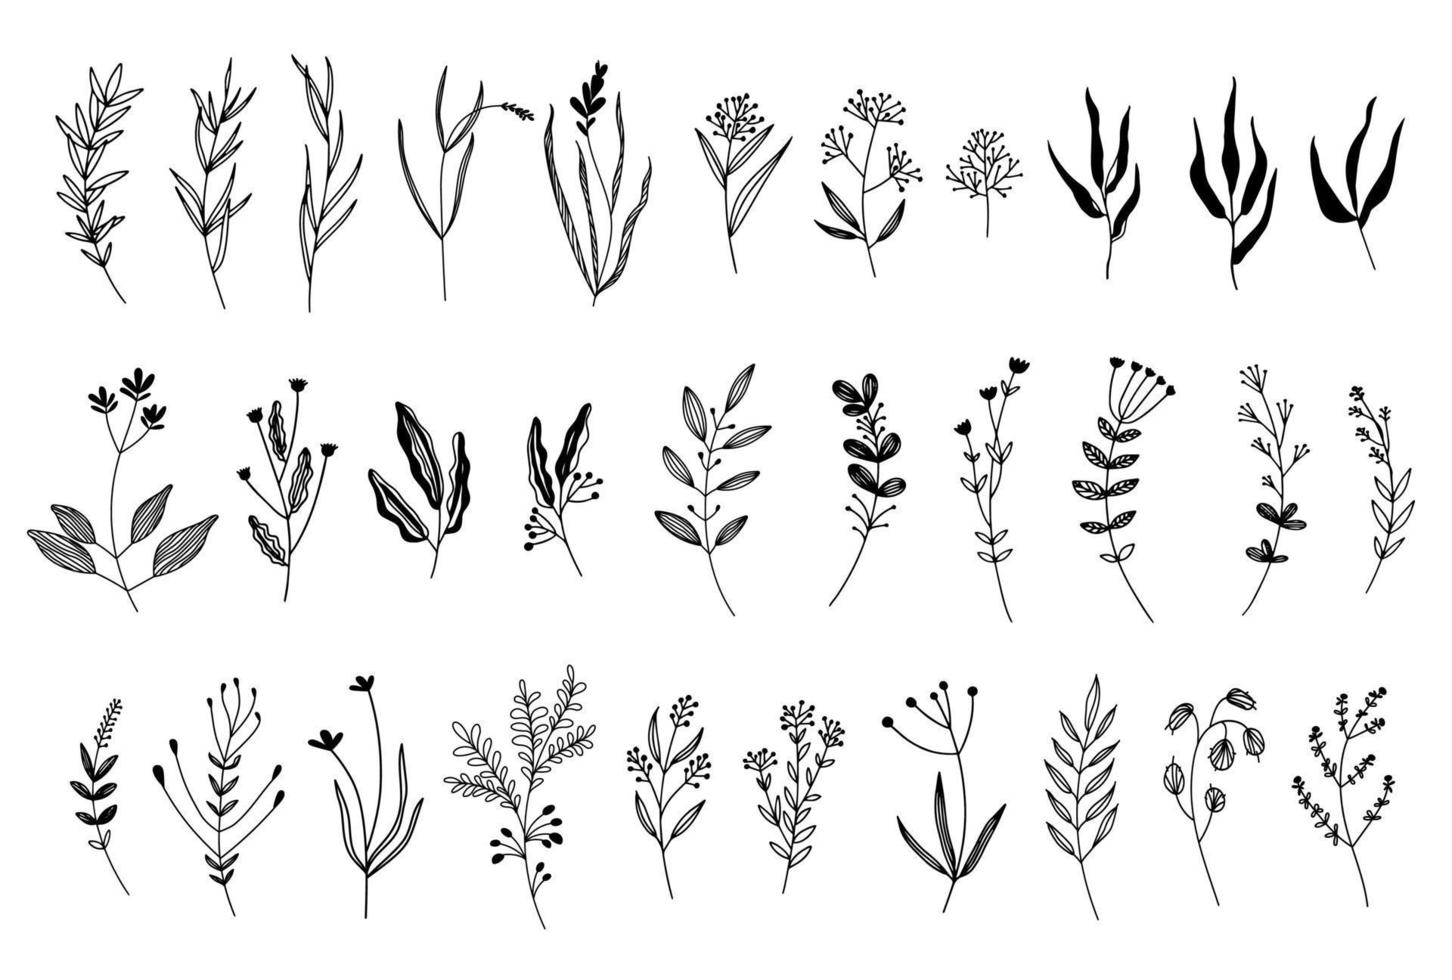 un grand ensemble de fleurs graphiques, de plantes. 31 éléments de conception de style croquis dessinés à la main. parfait pour créer des imprimés, des motifs, des tatouages, etc. vecteur